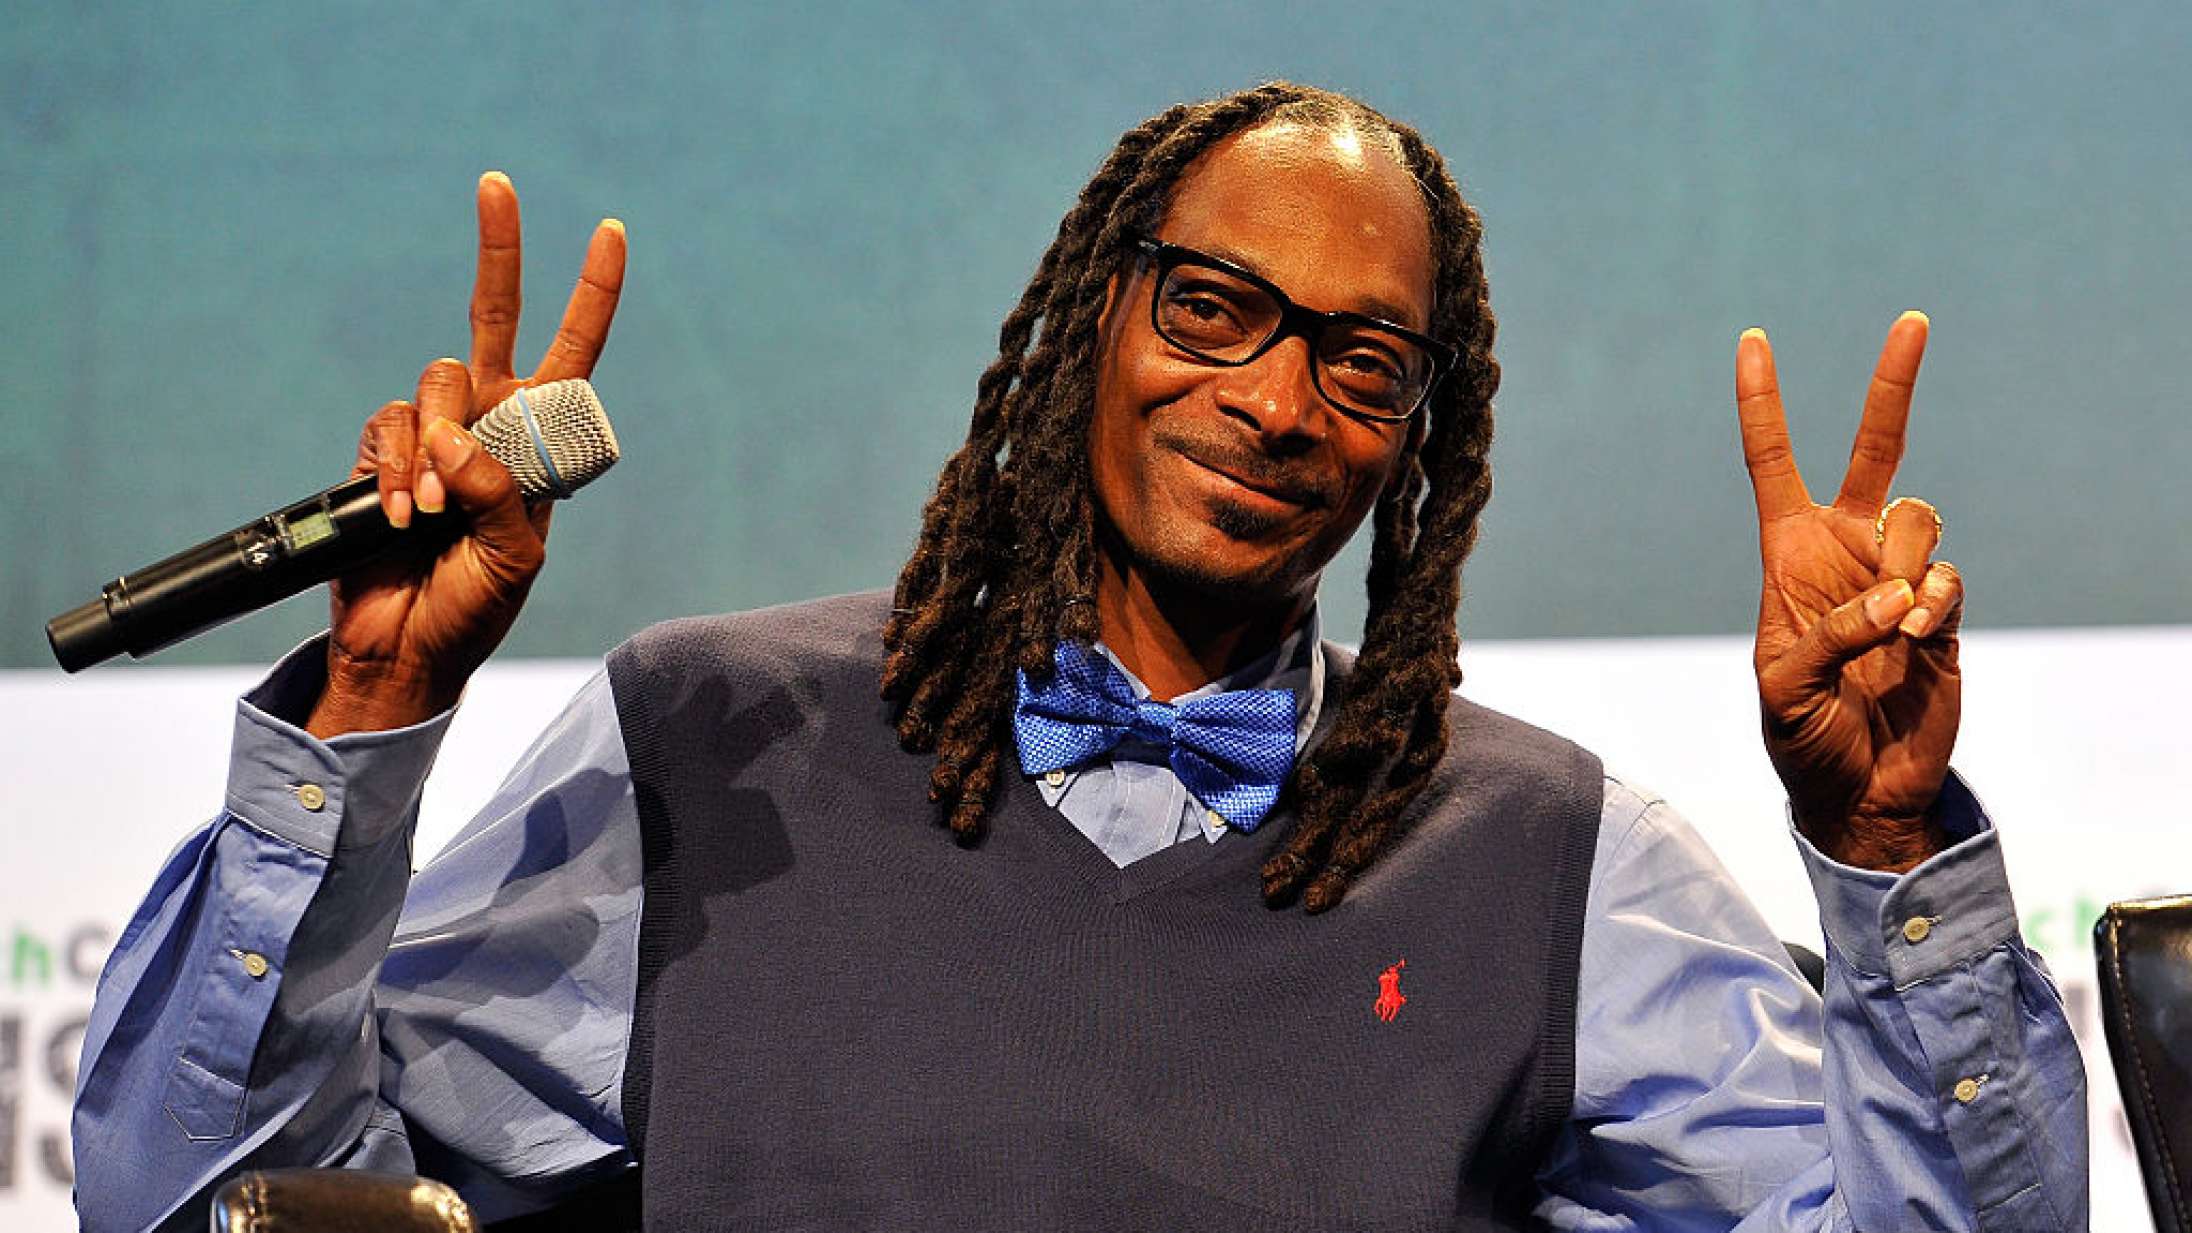 Vent, står Snoop Dogg bag populær kryptokunst-konto?